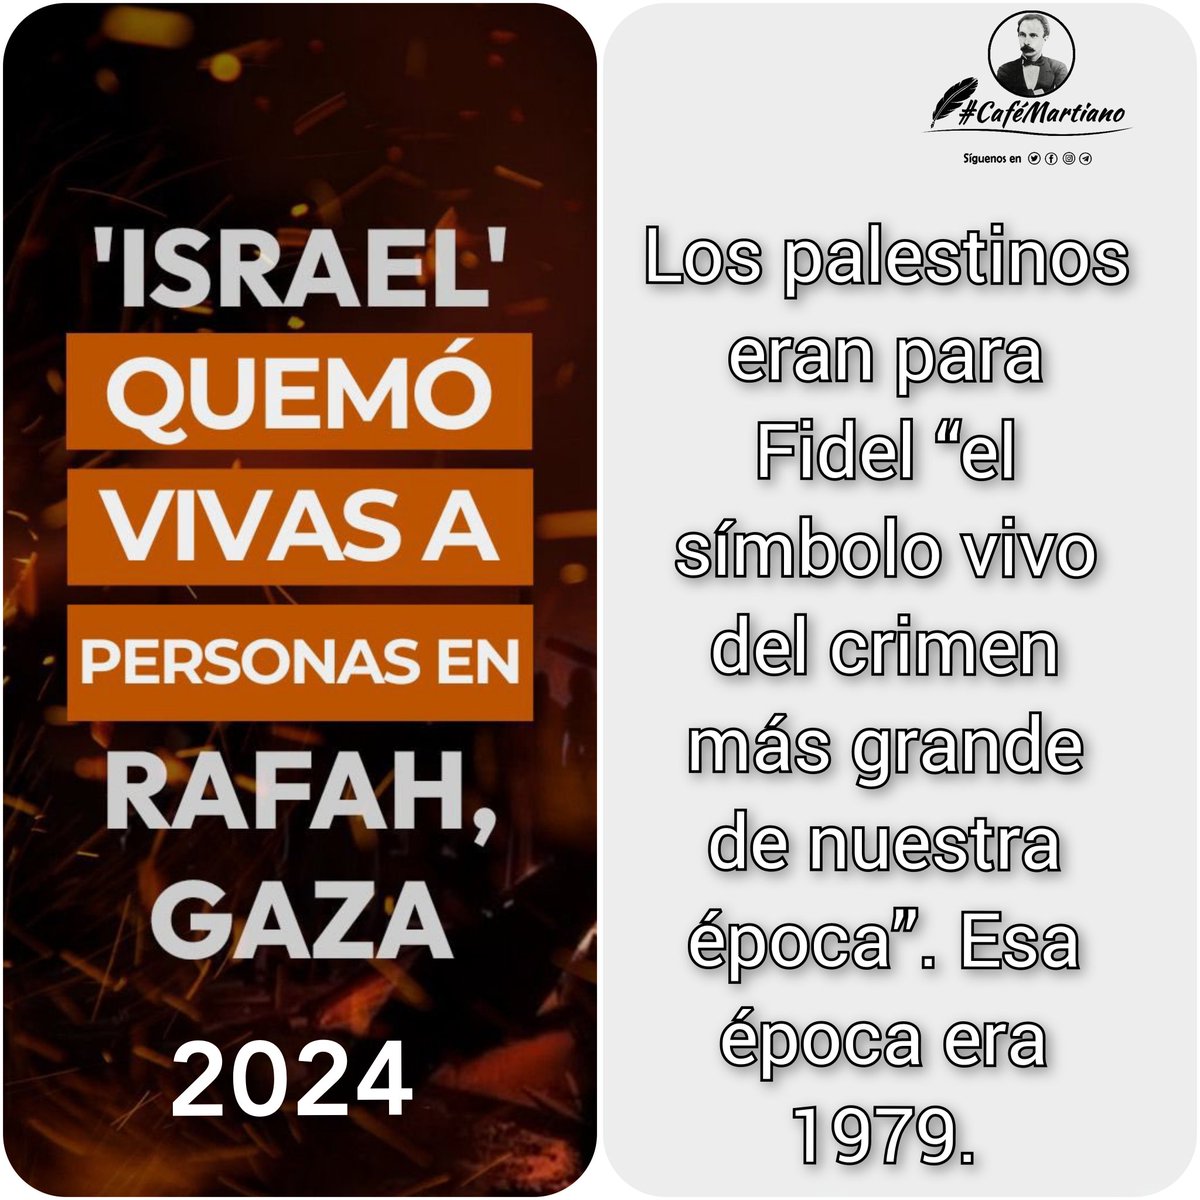 Buenos días 🇨🇺 #CaféMartiano Genocidio en Palestina 🇵🇸 Israel quema viva a personas en Rafah, Gaza. ✍️“Juntarse: ésta es la palabra del mundo”. 28|5|1892 ¡El mundo debe detener ya la masacre del pueblo palestino! @DiazCanelB #FreePalestina